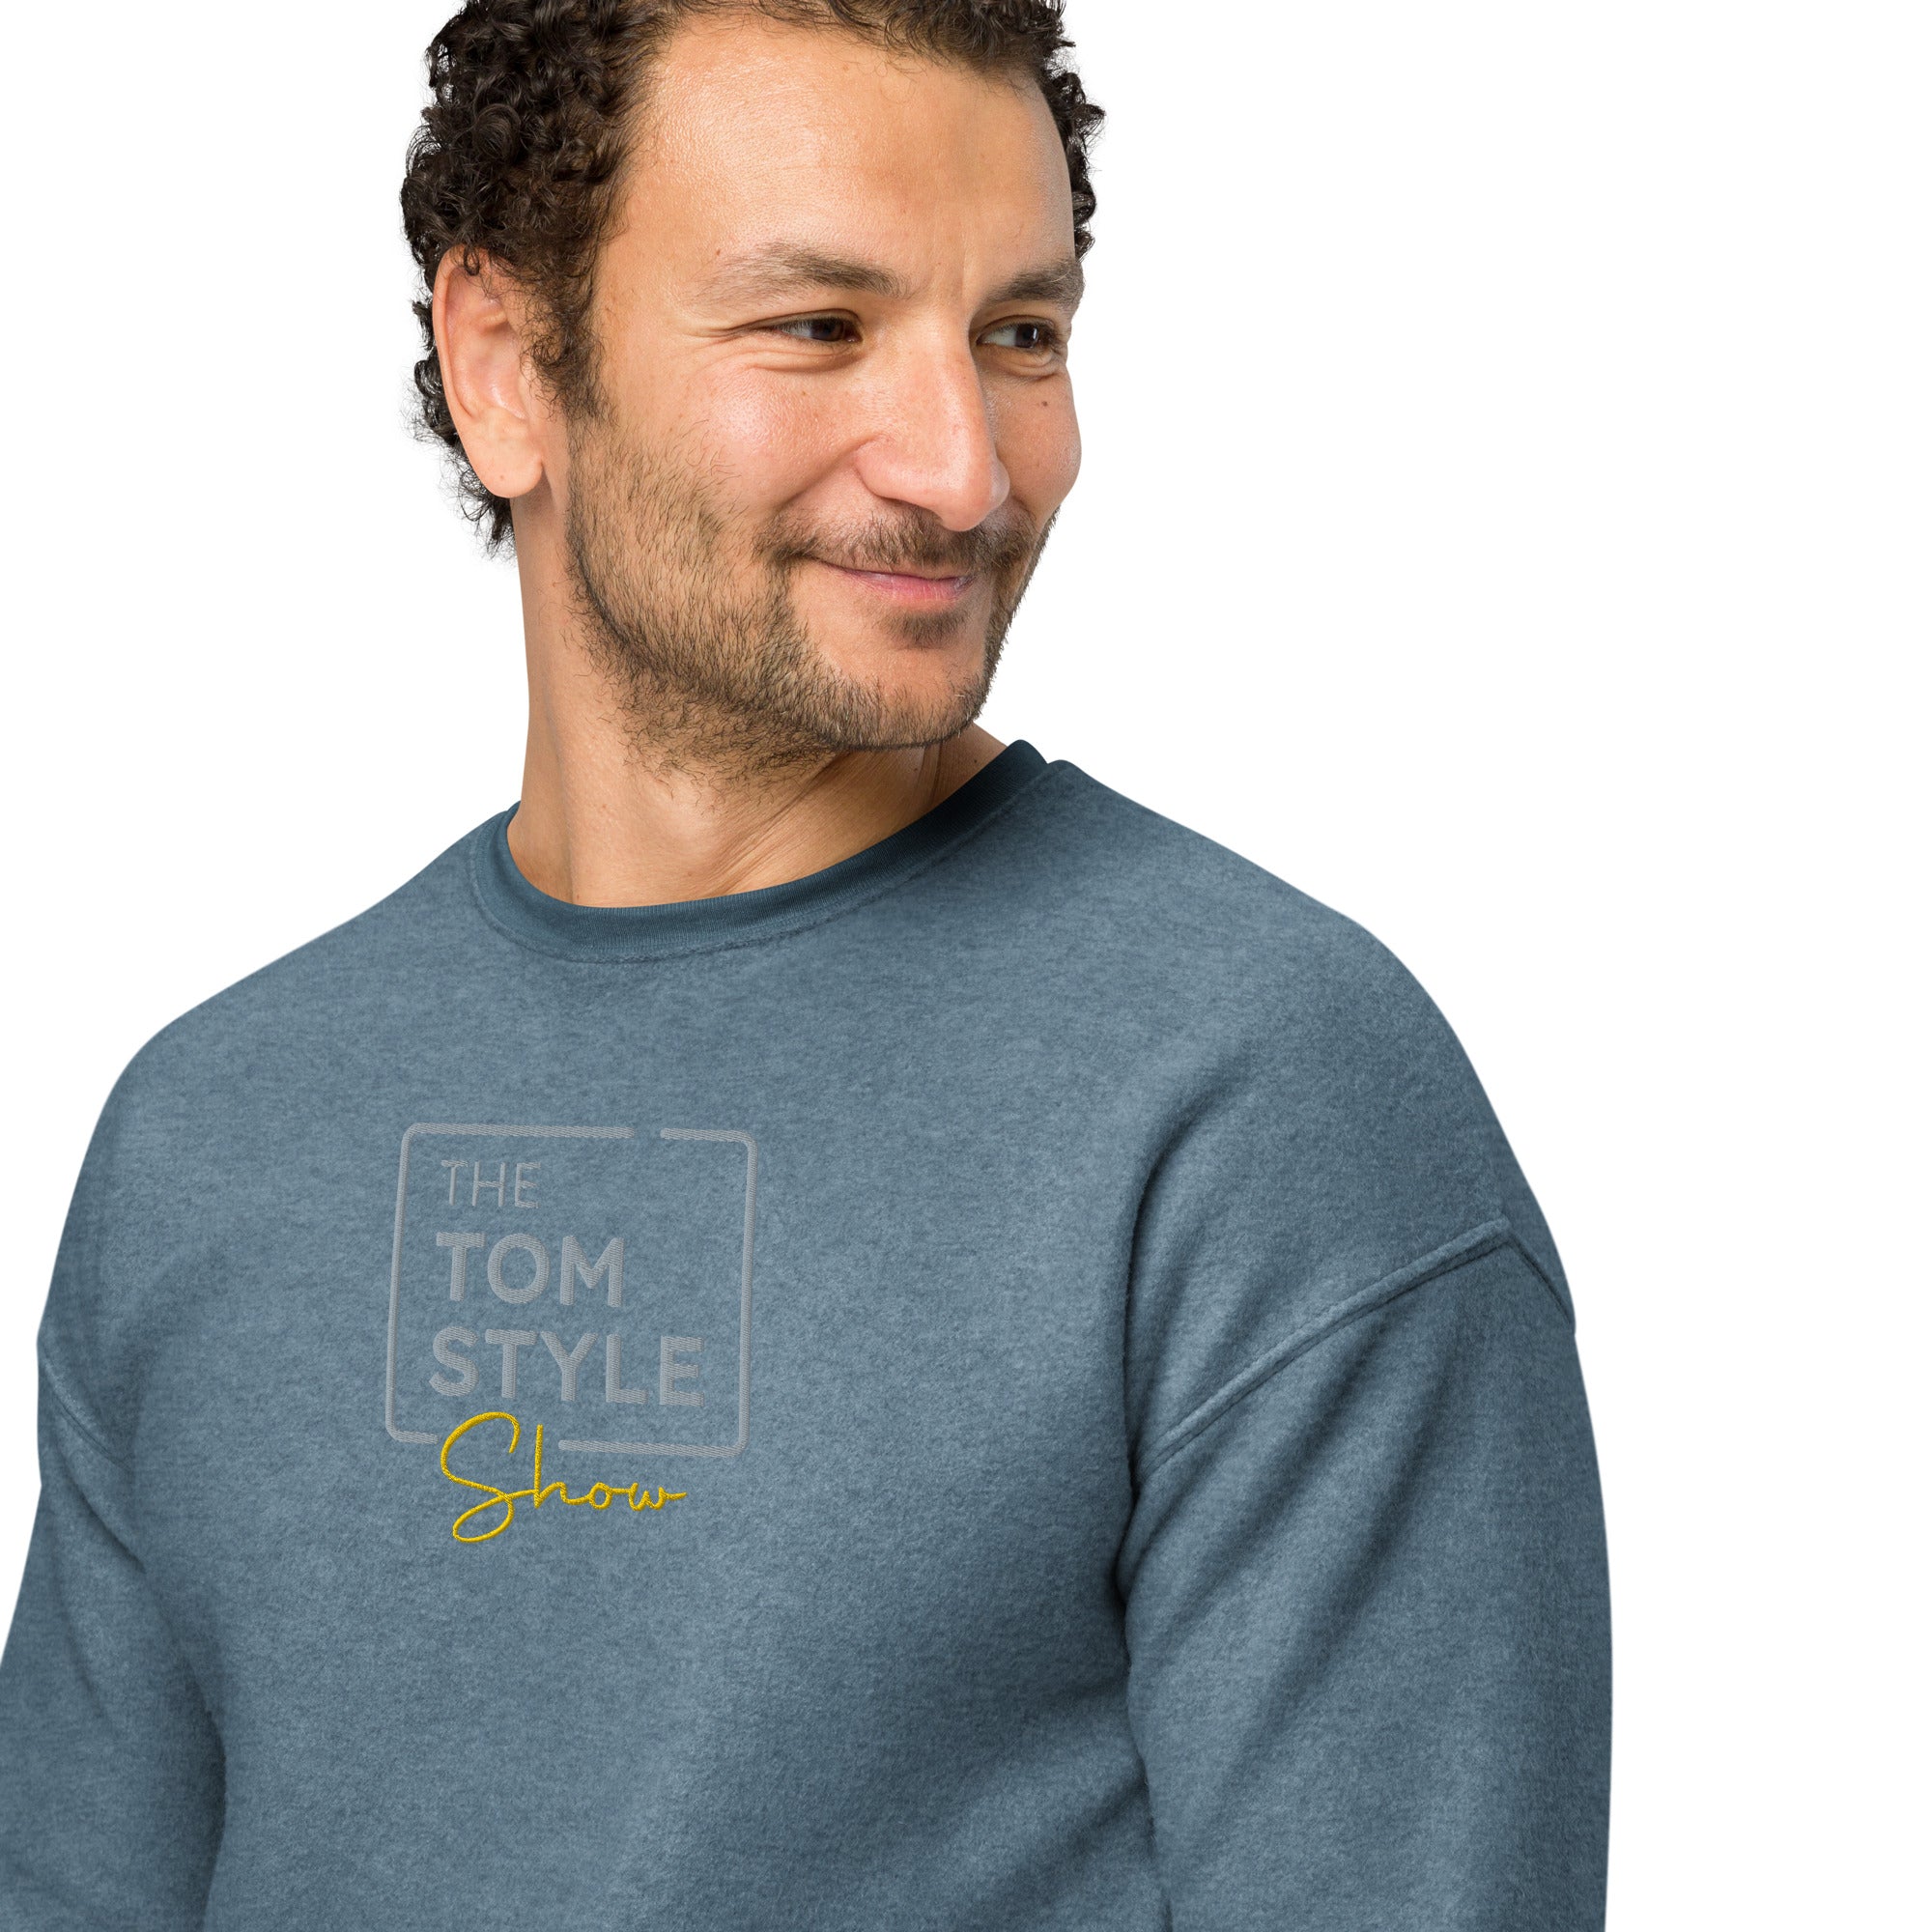 Men's Sueded Fleece Sweatshirt - Tom Style Show